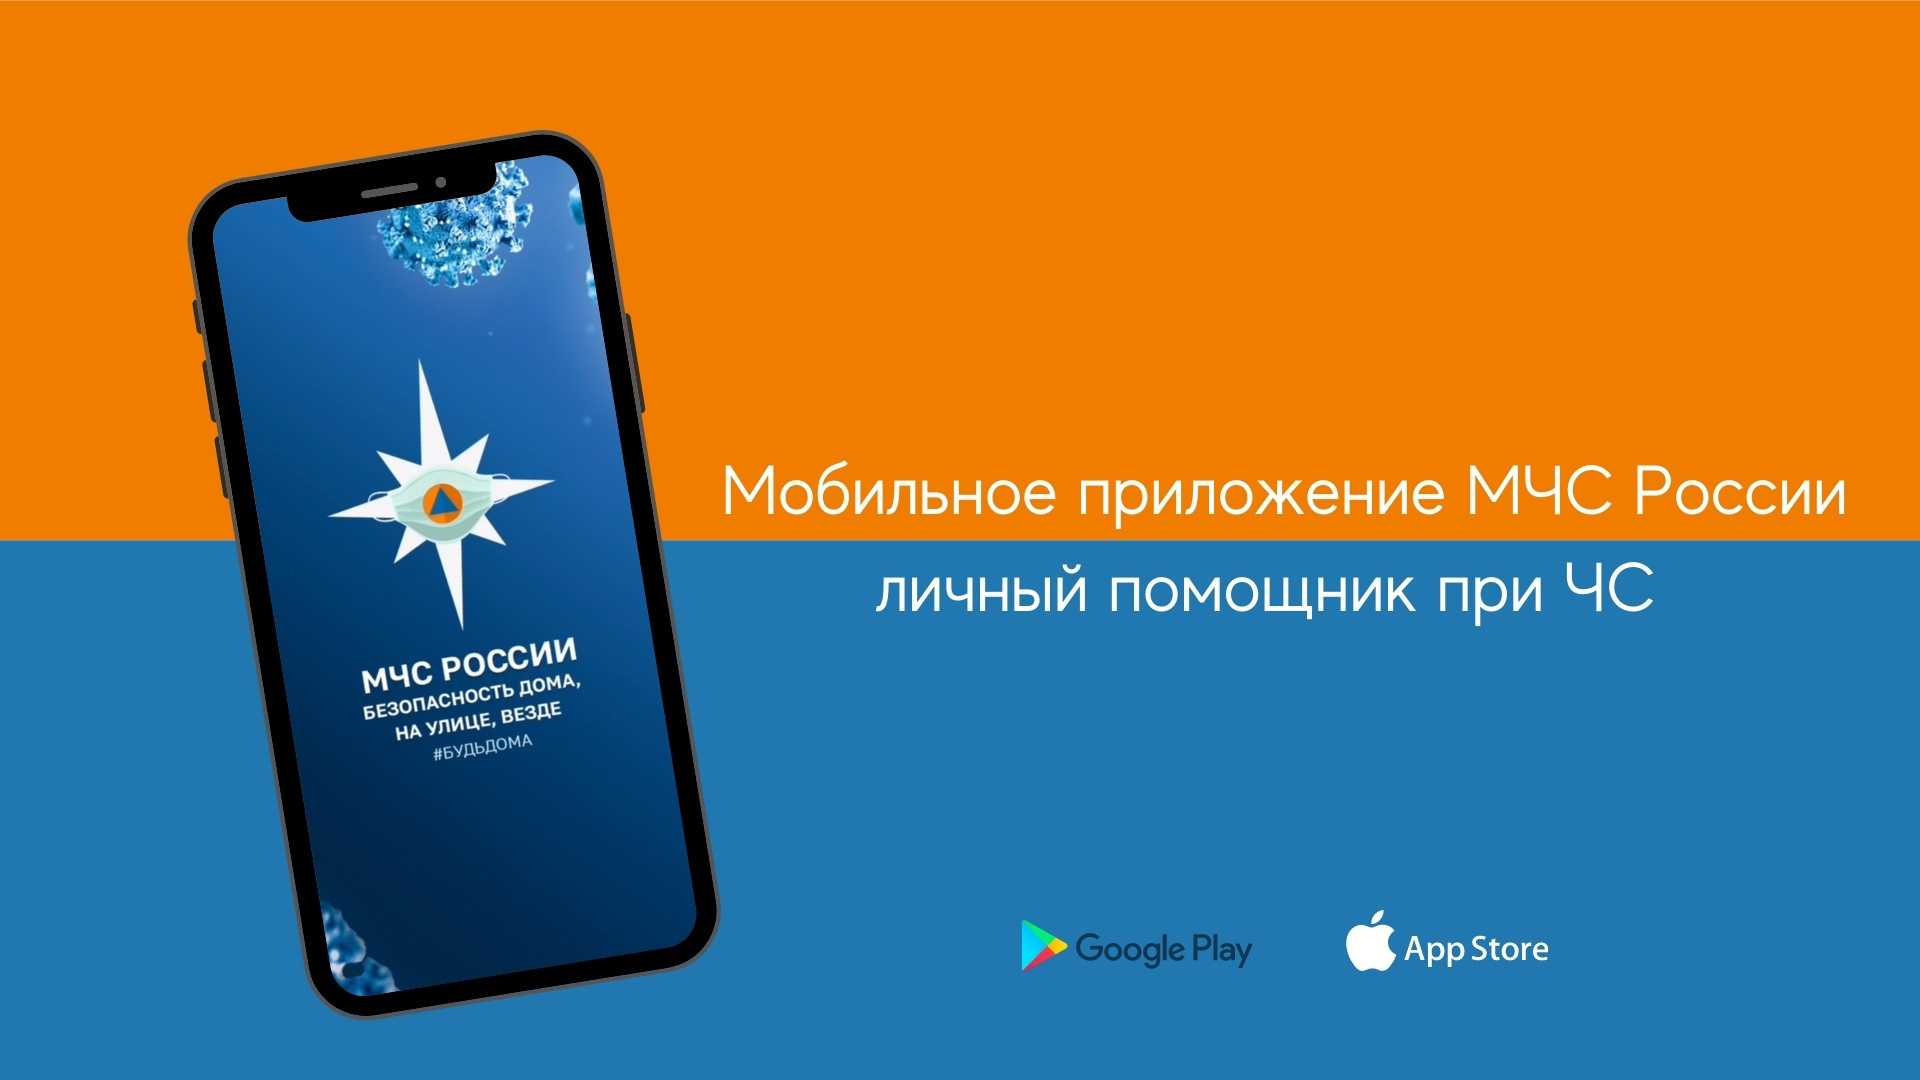 Приложение для мобильных устройств «МЧС России».